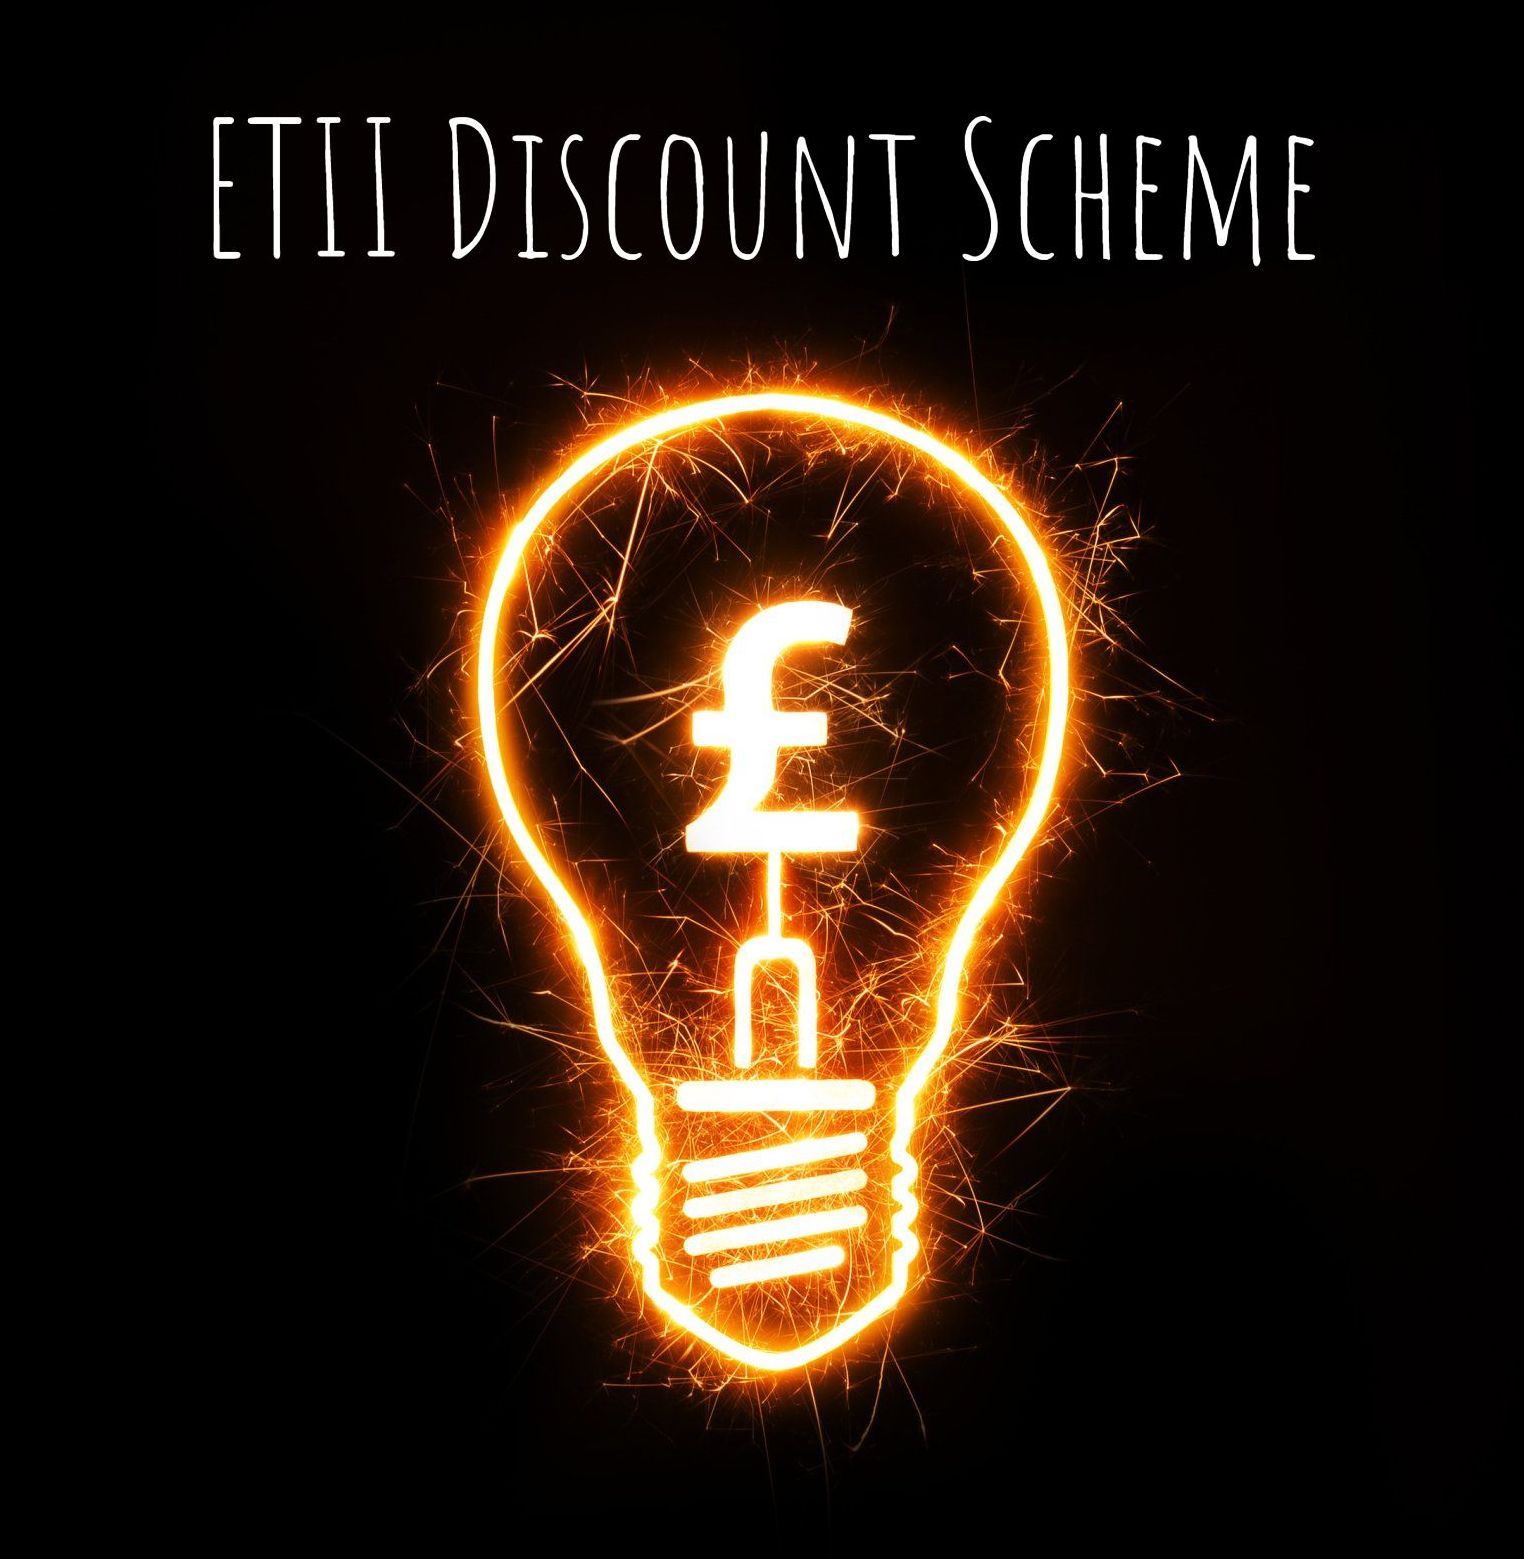 ETII Discount Scheme